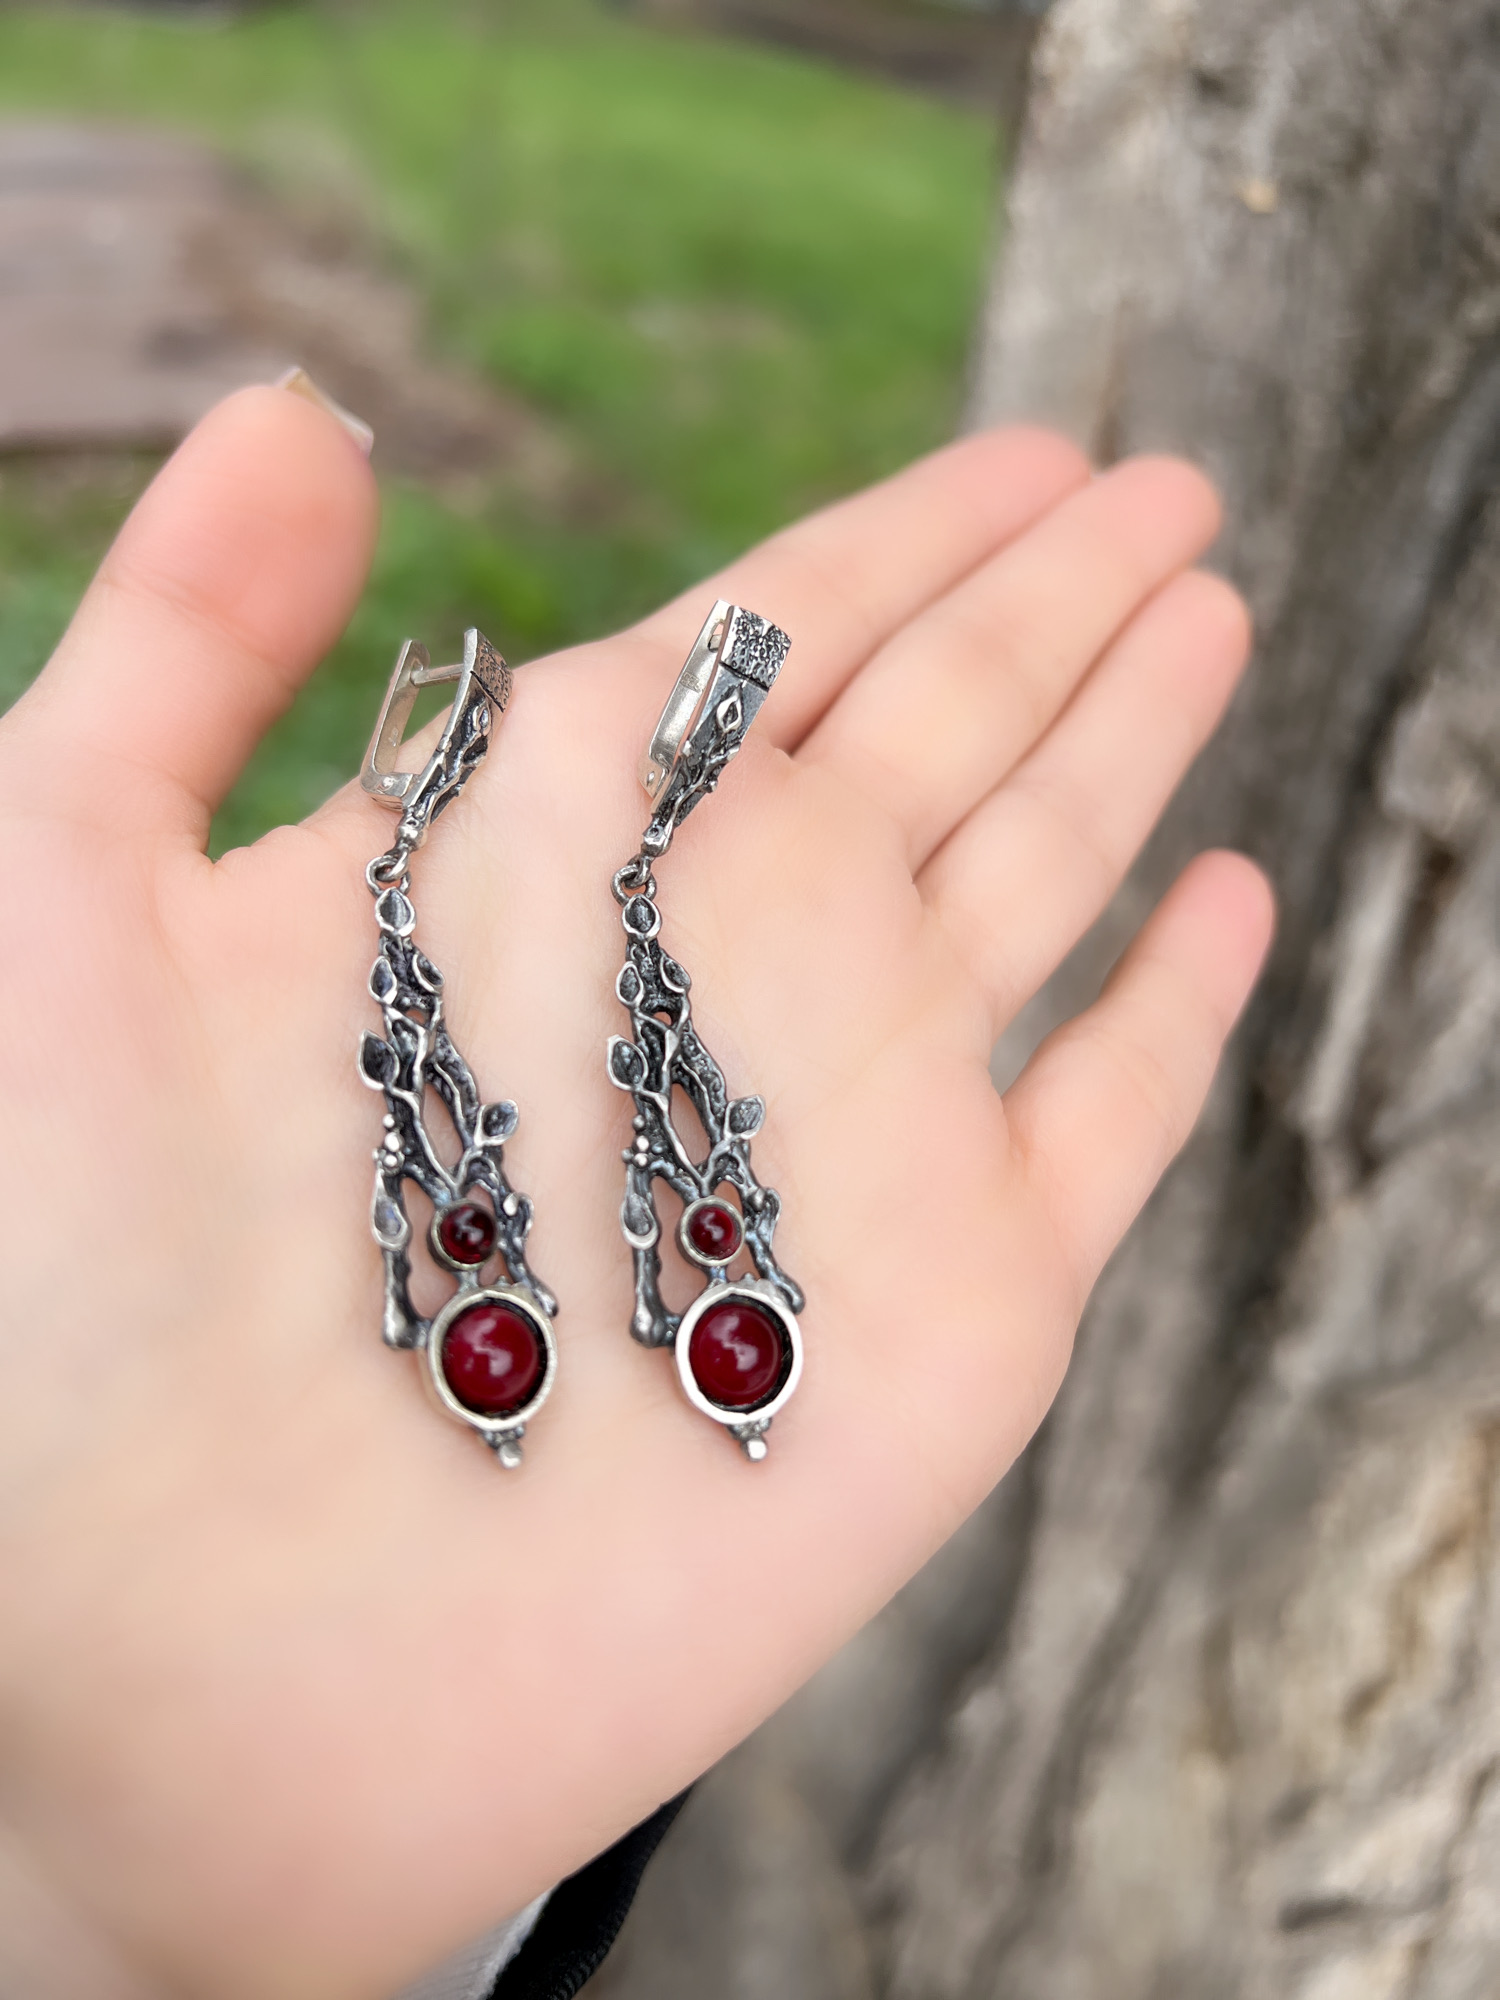 Pink Quartz Earrings STERLING 925 Armenian Jewelry Handmade